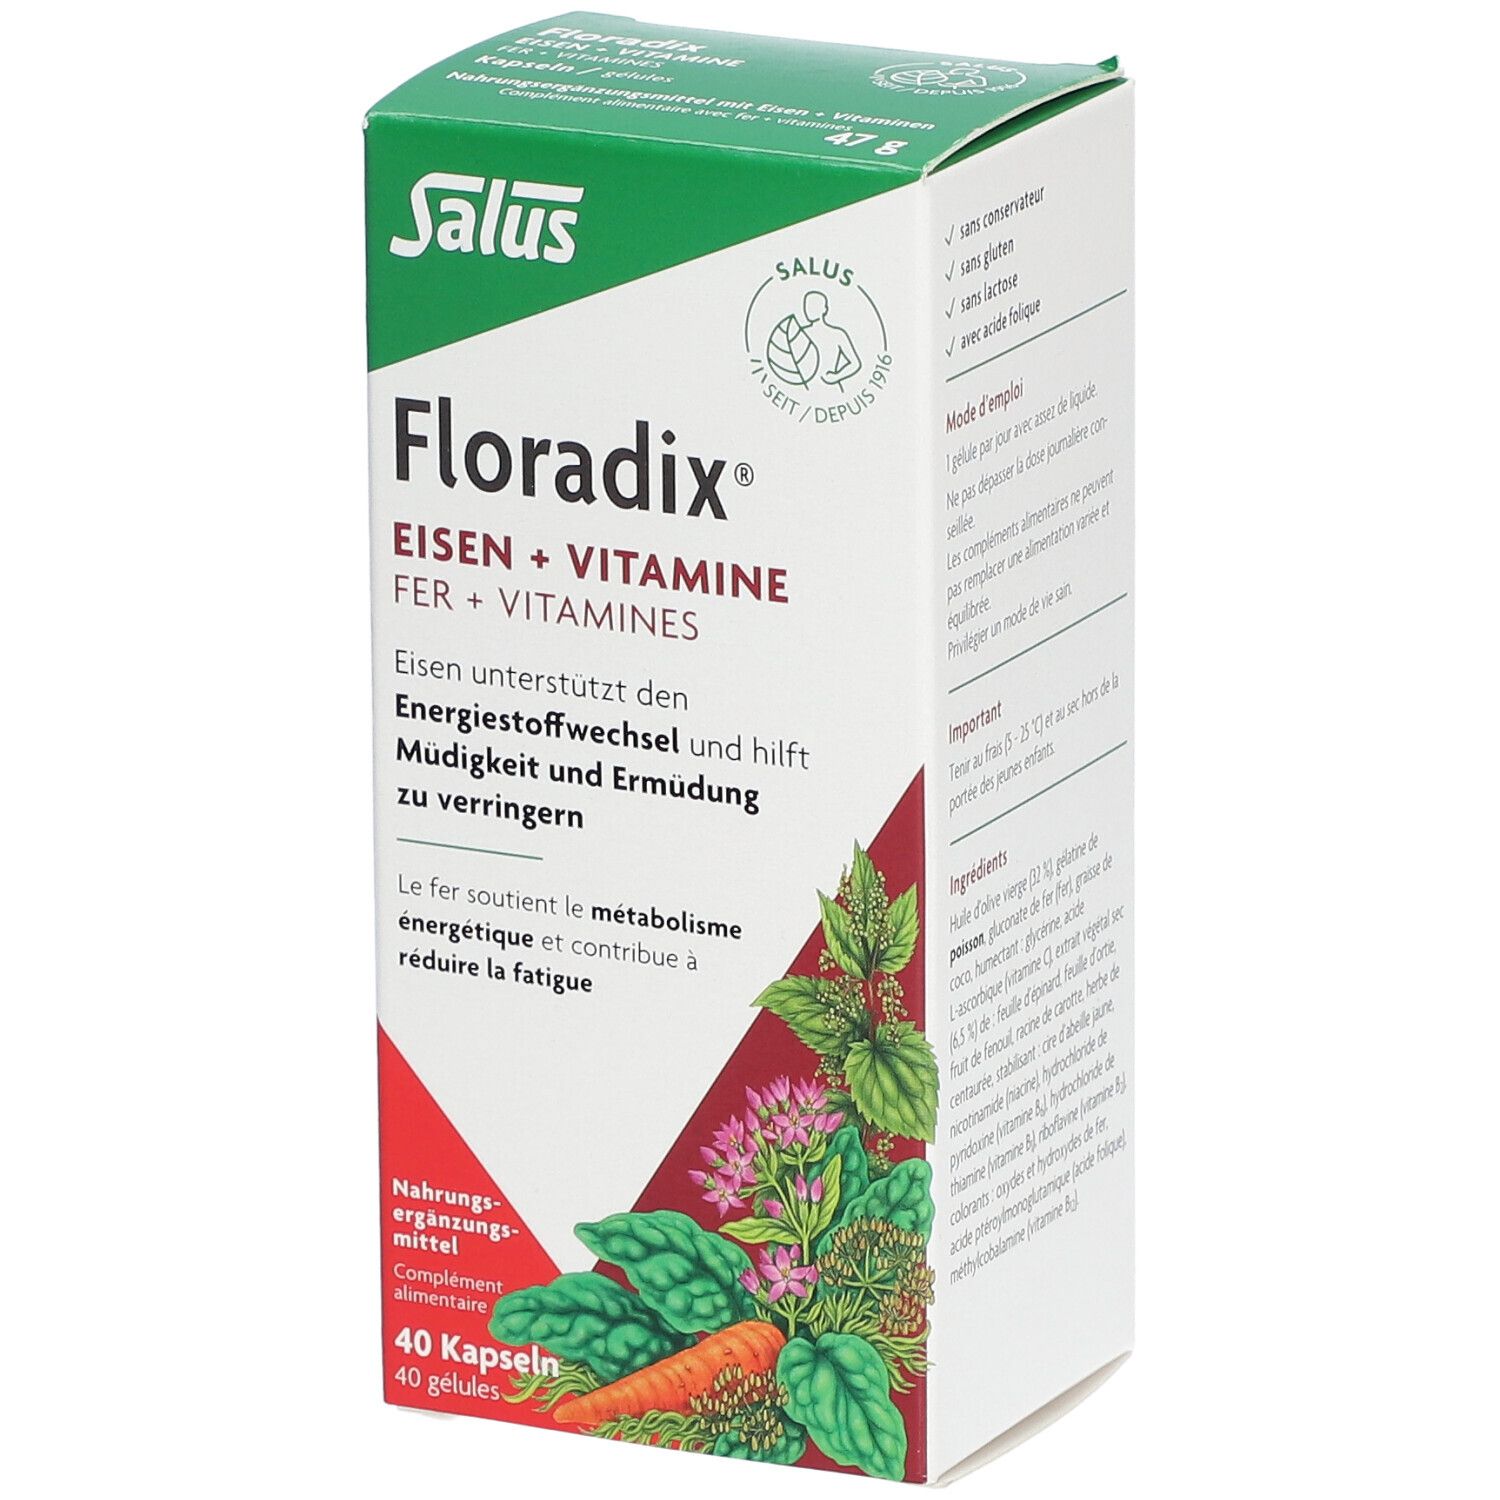 SALUS Pharma GmbH Floradix® Eisen + Vitamine